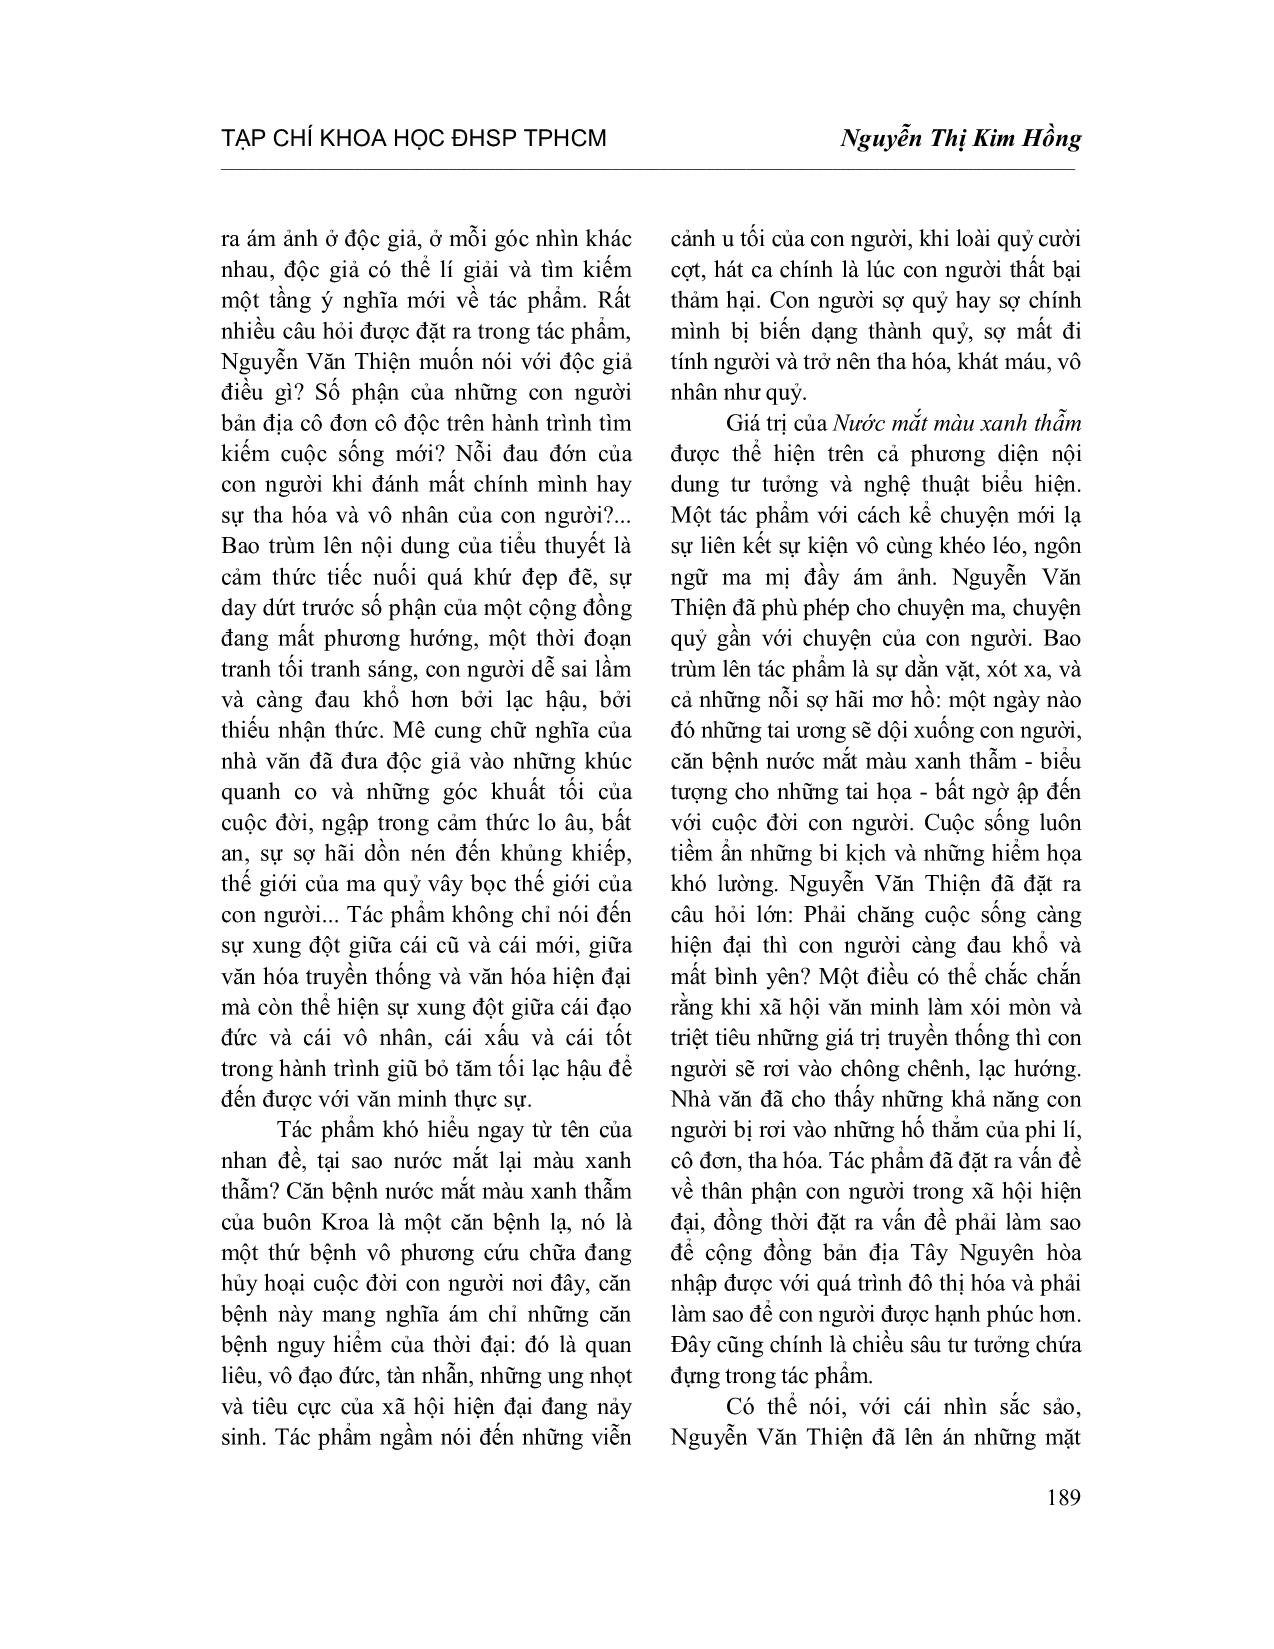 Ý nghĩa tiểu thuyết Nước mắt màu xanh thẫm của Nguyễn Văn Thiện trang 4